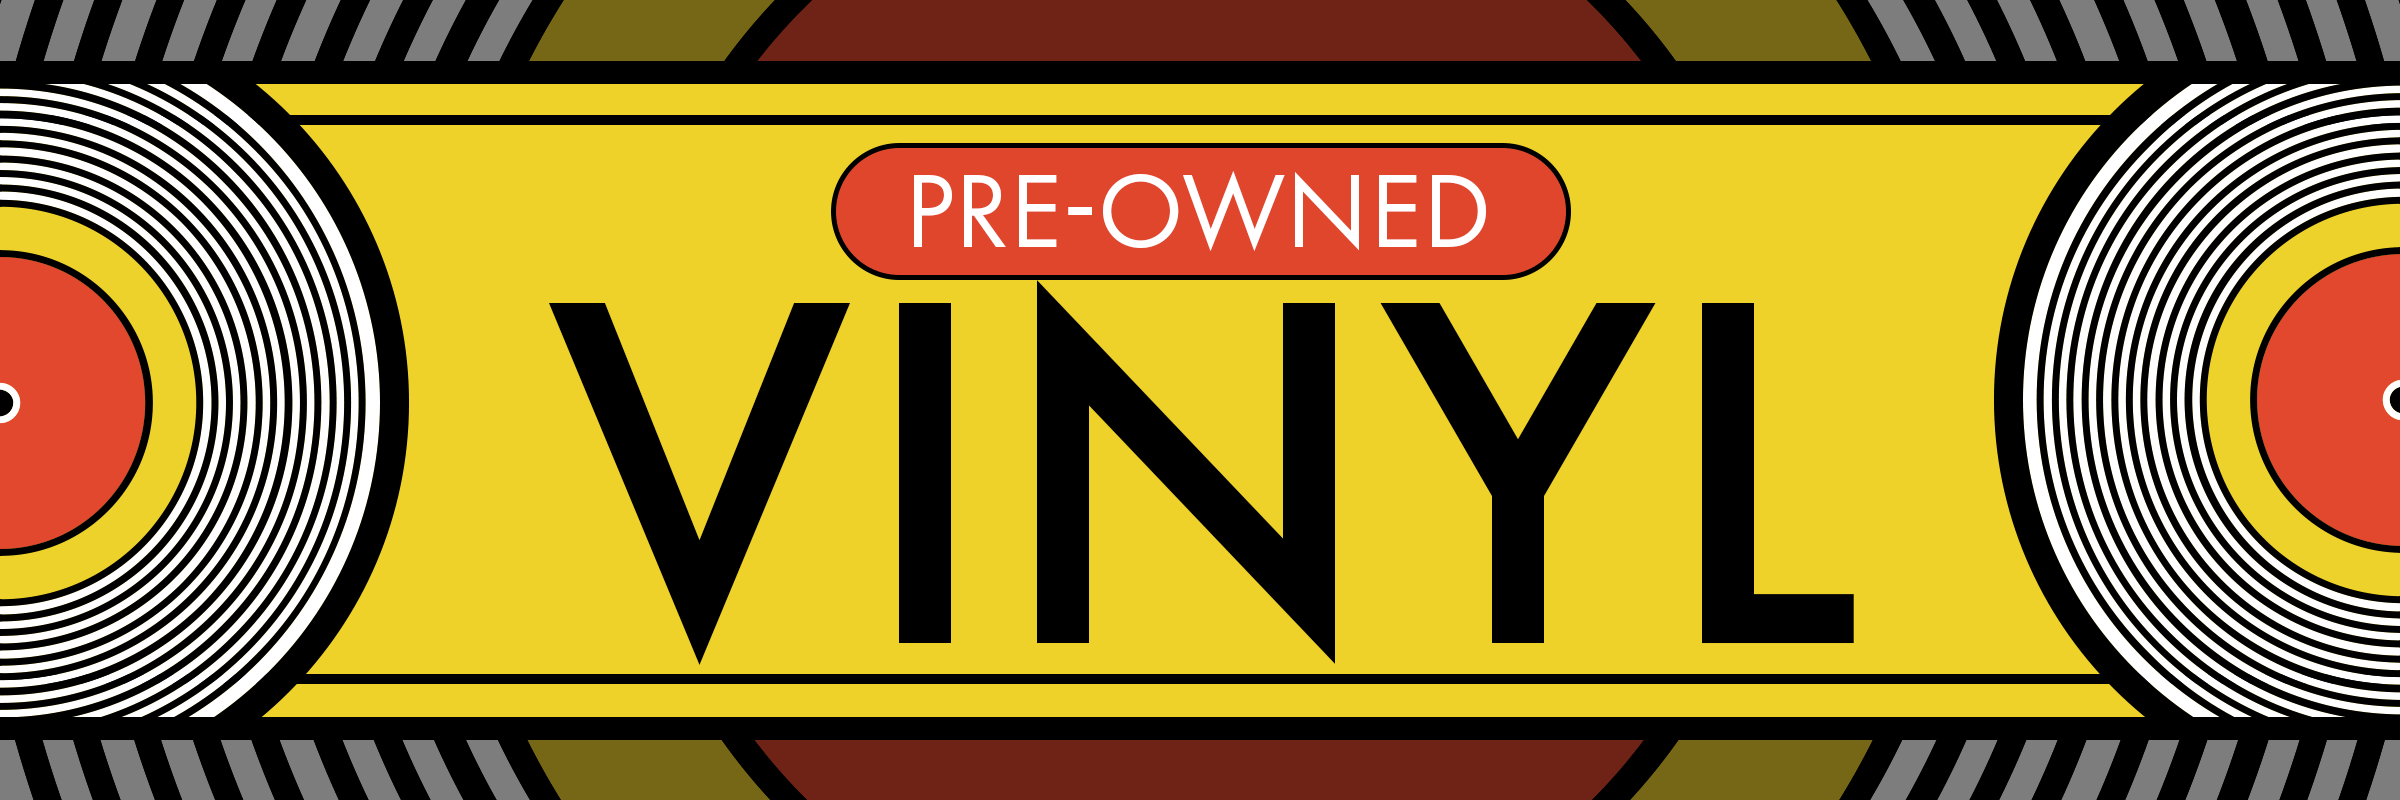 Pre-Owned Vinyl